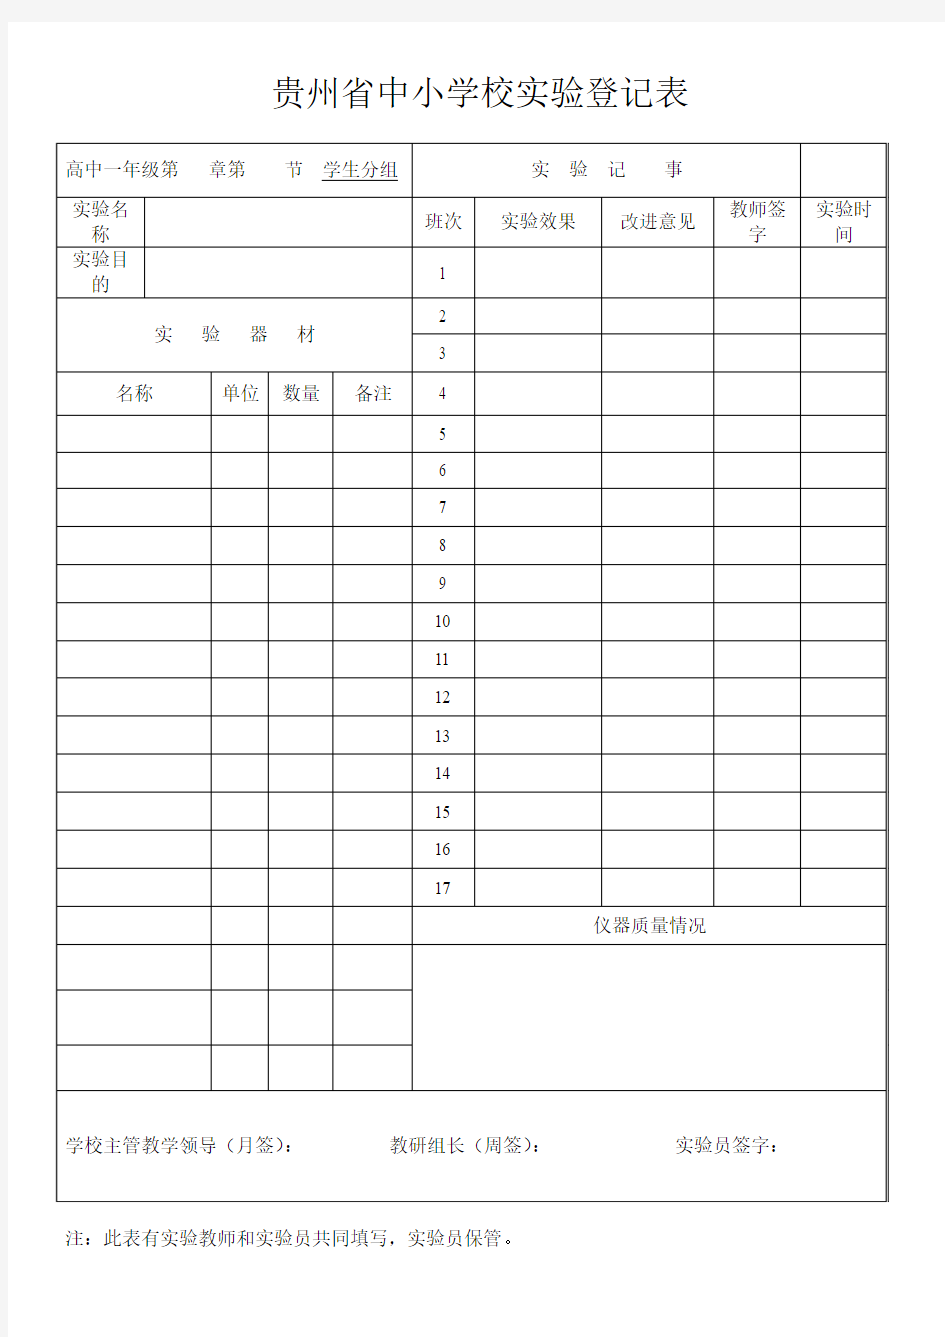 贵州省中小学校实验登记表